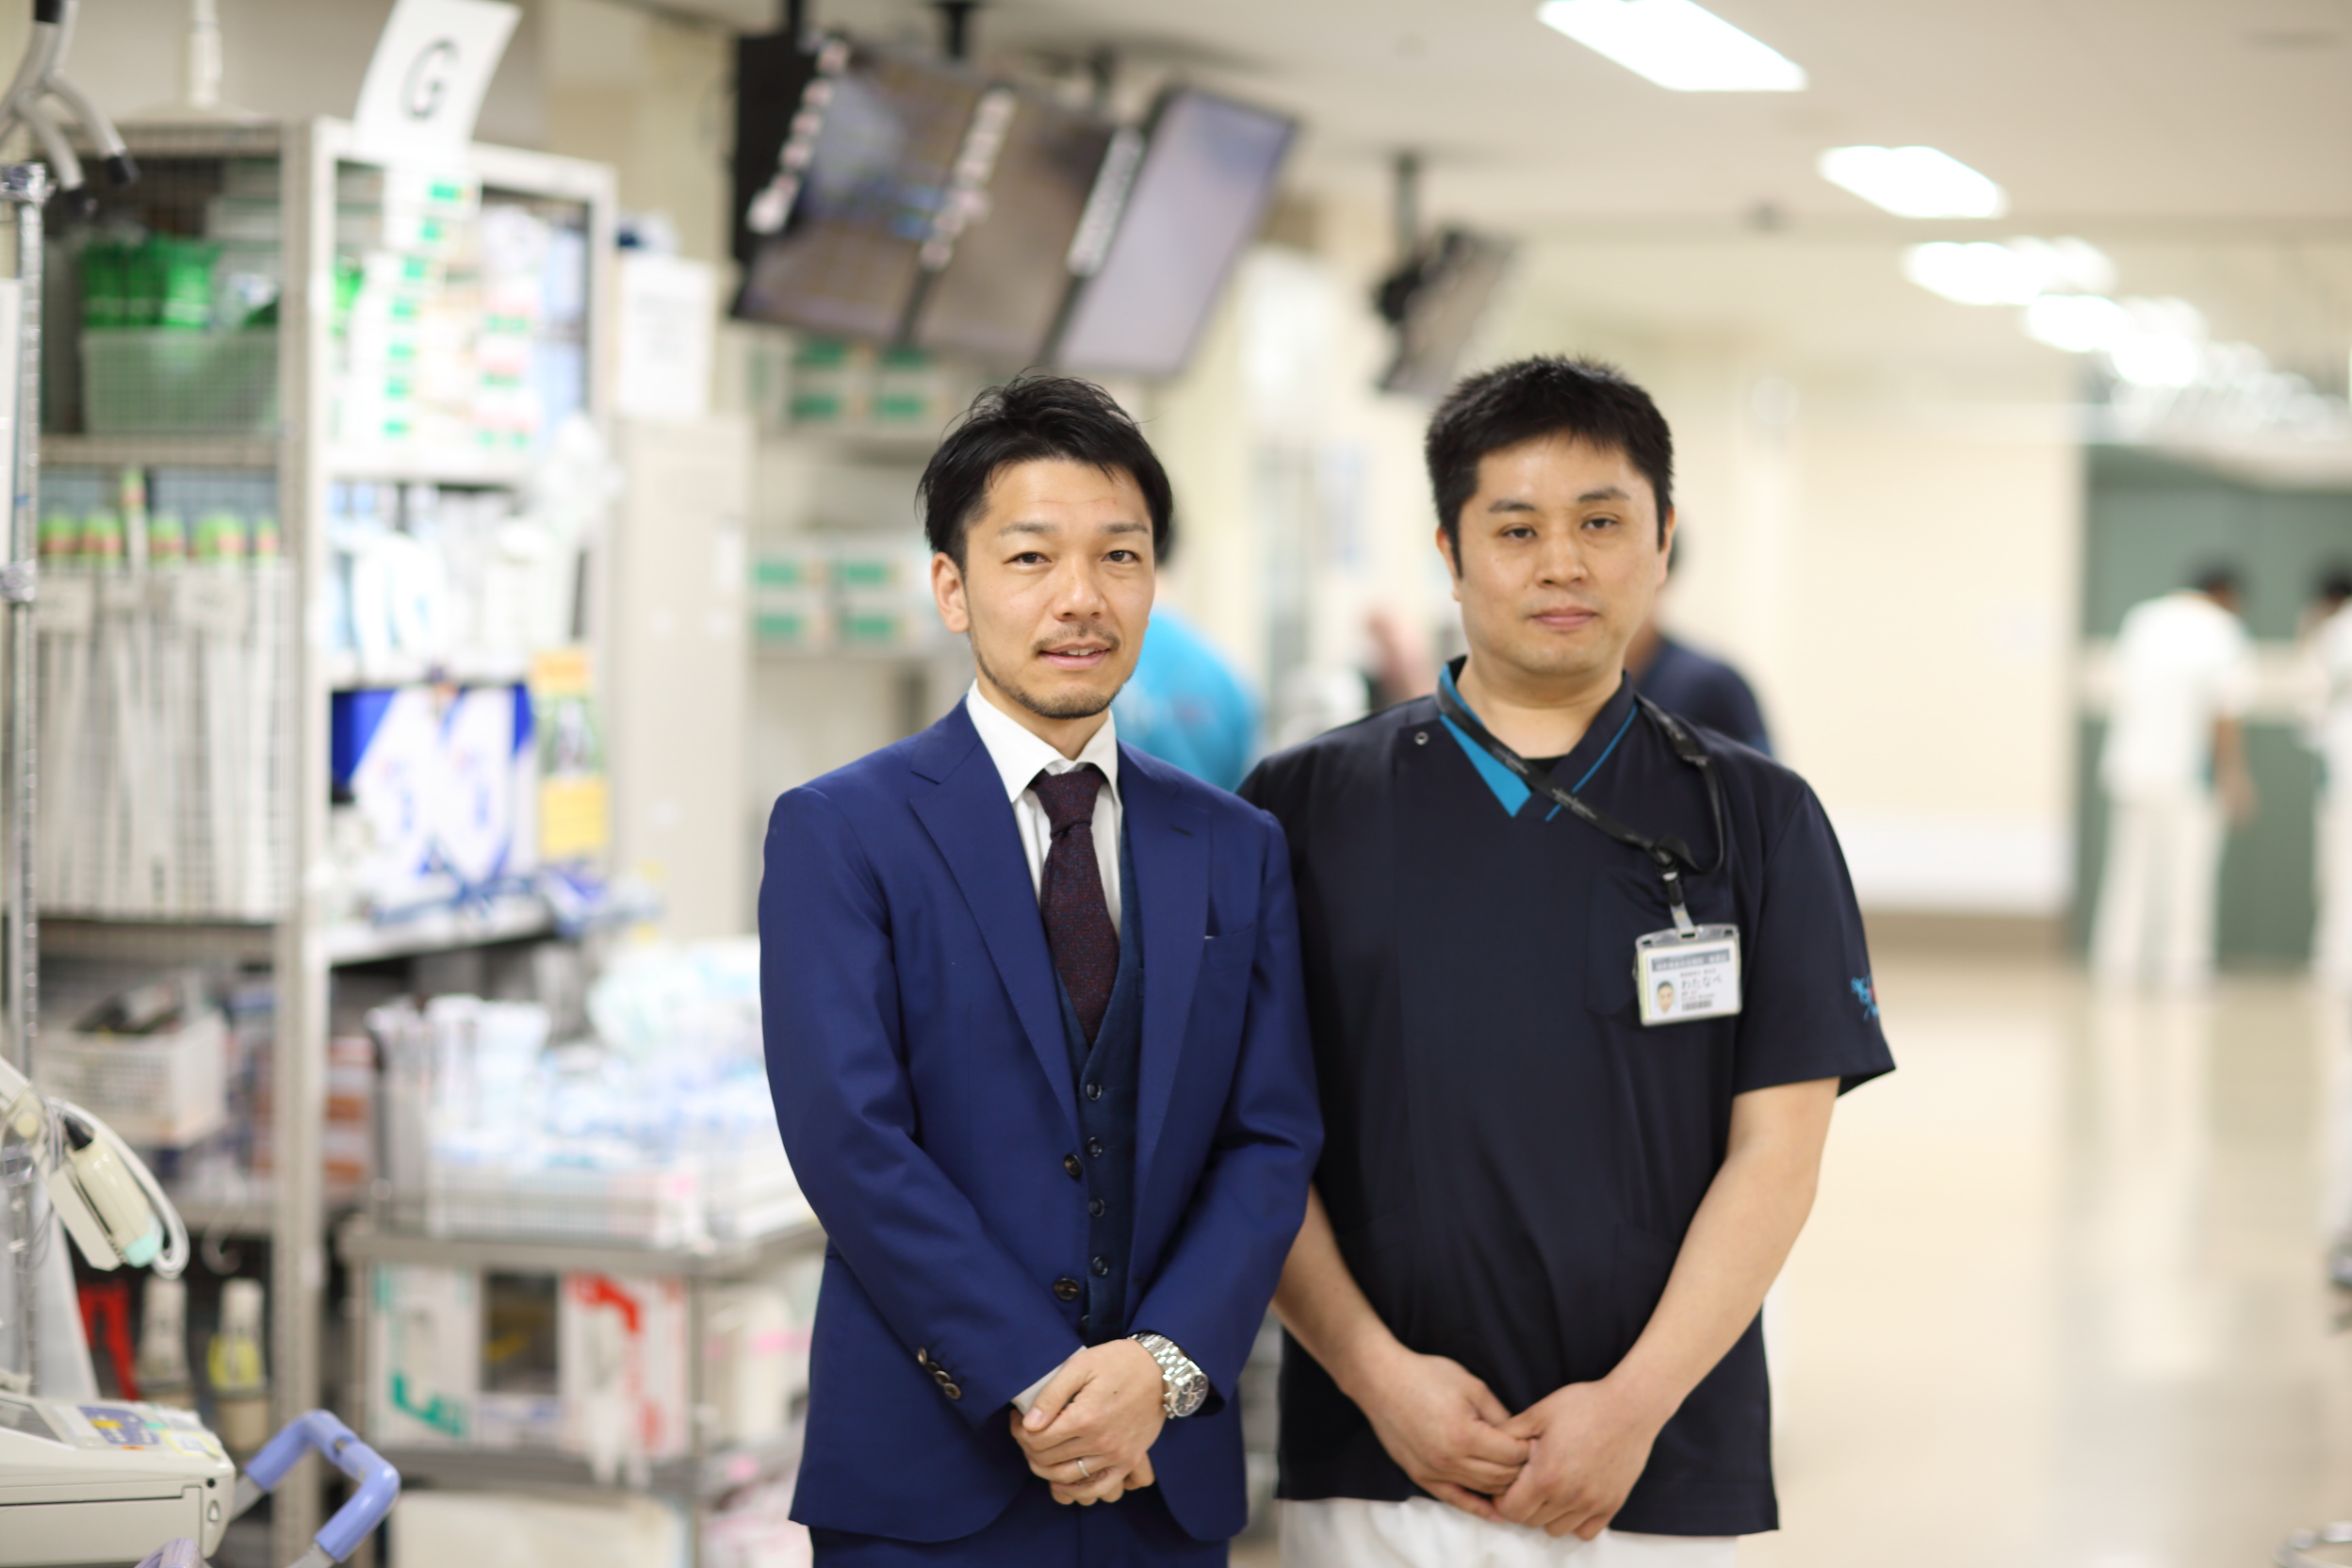 受入患者数日本随一 湘南鎌倉総合病院救命救急センターの救急救命士の役割 後編 エムステージグループ 持続可能な医療の未来をつくるために